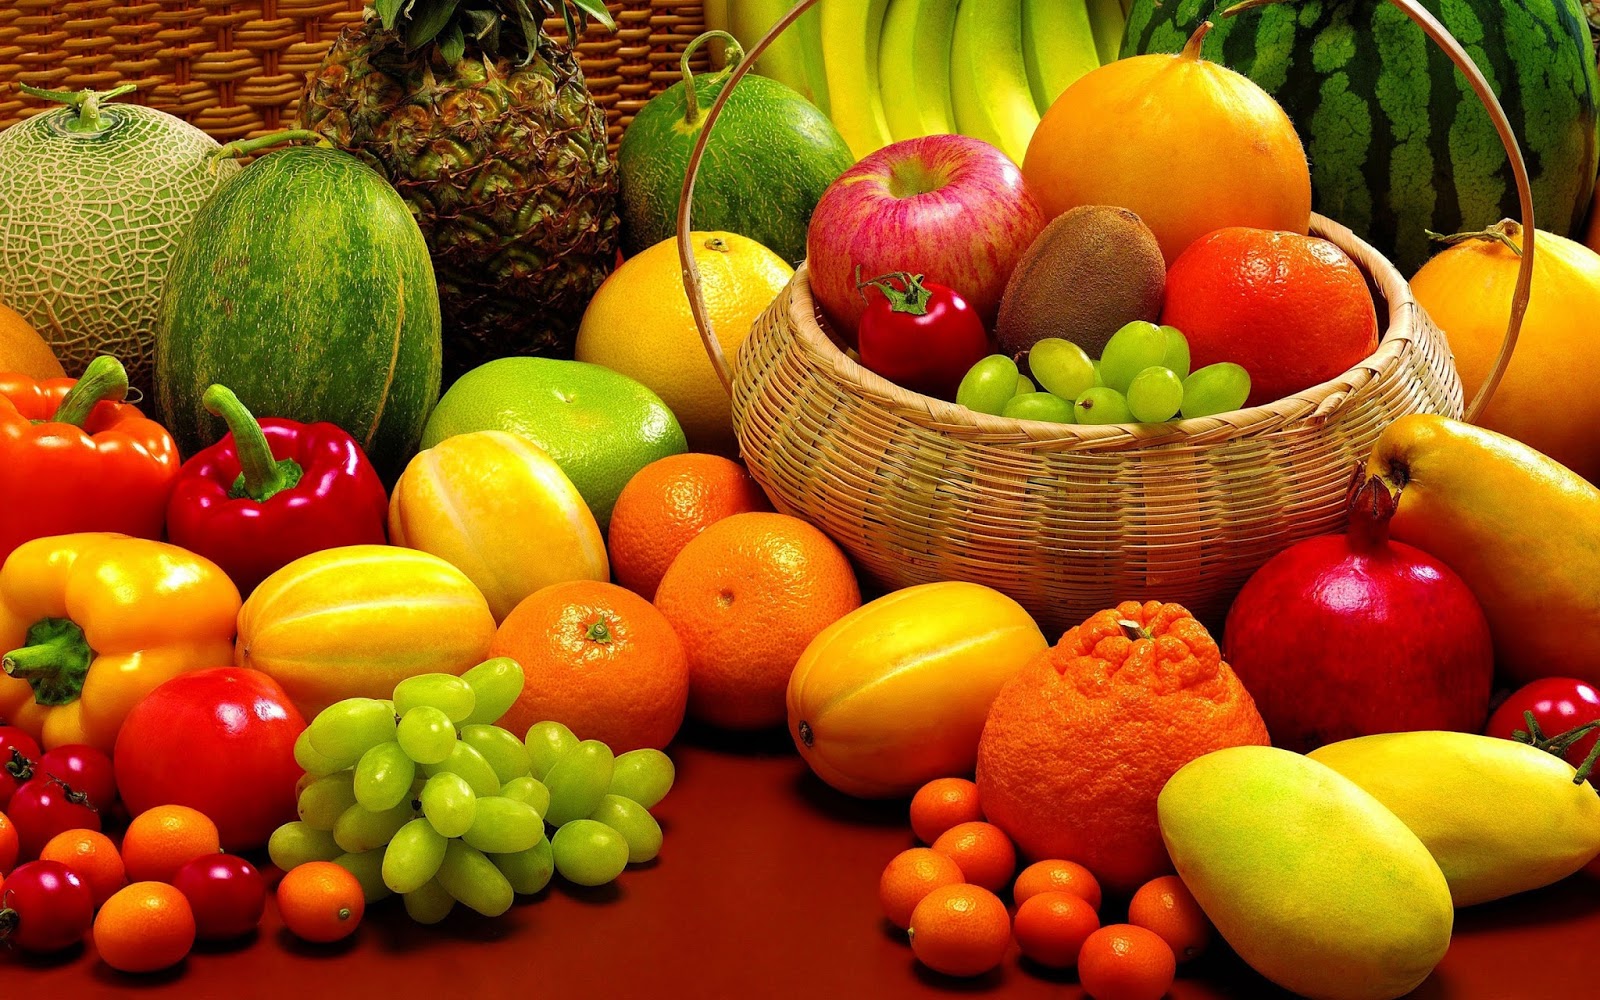 تفسير حلم رؤية الفاكهة أو الفواكه في المنام لابن سيرين